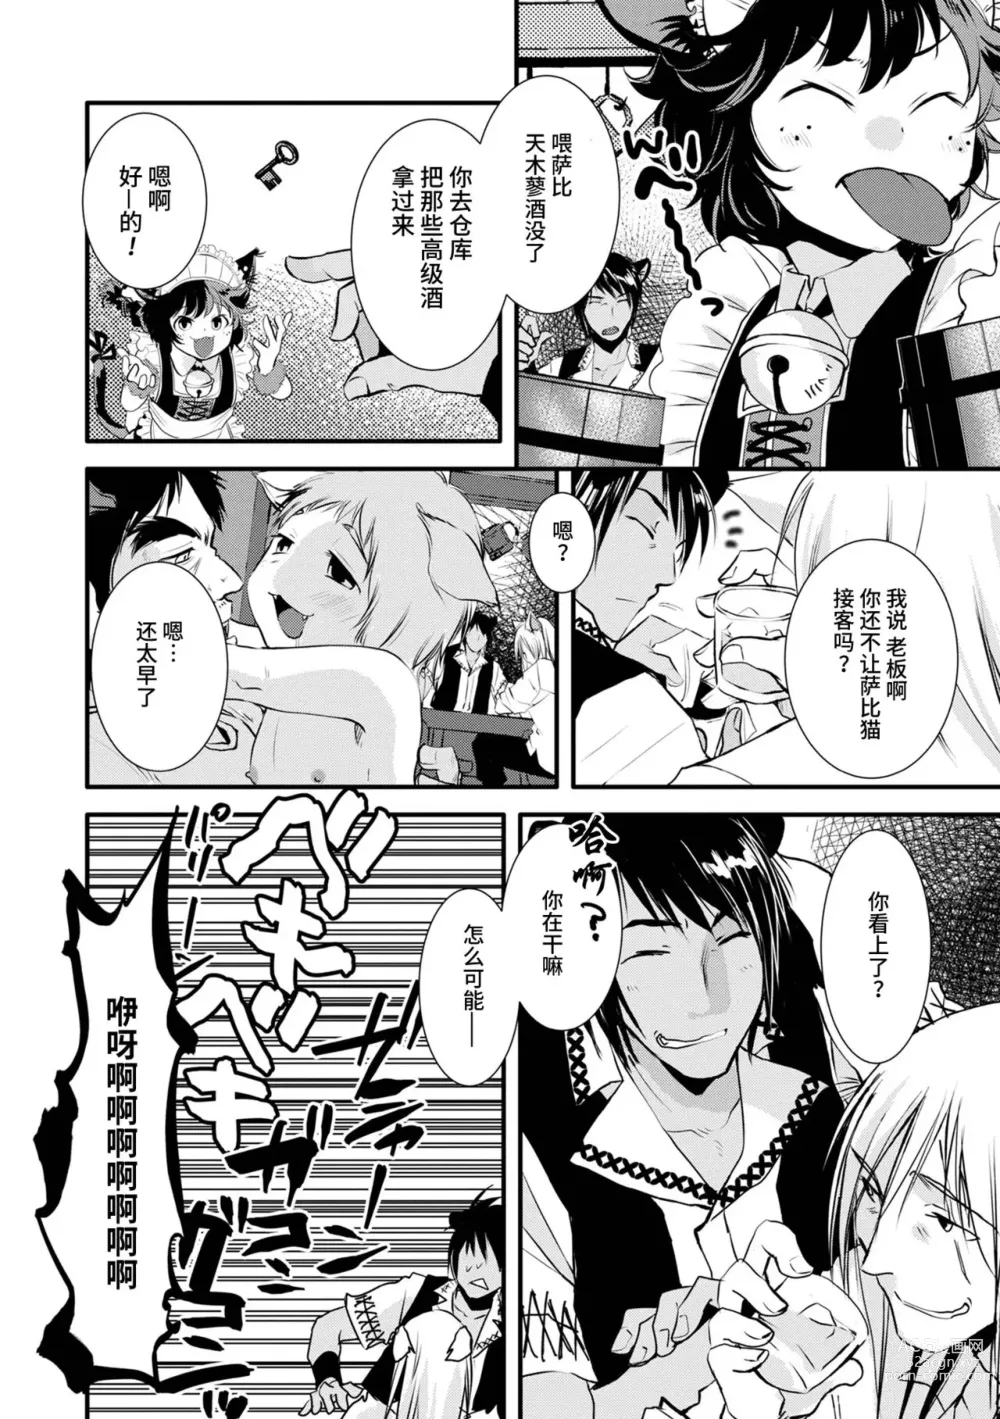 Page 2 of manga Mimi  to Shippo no Amai Yoru